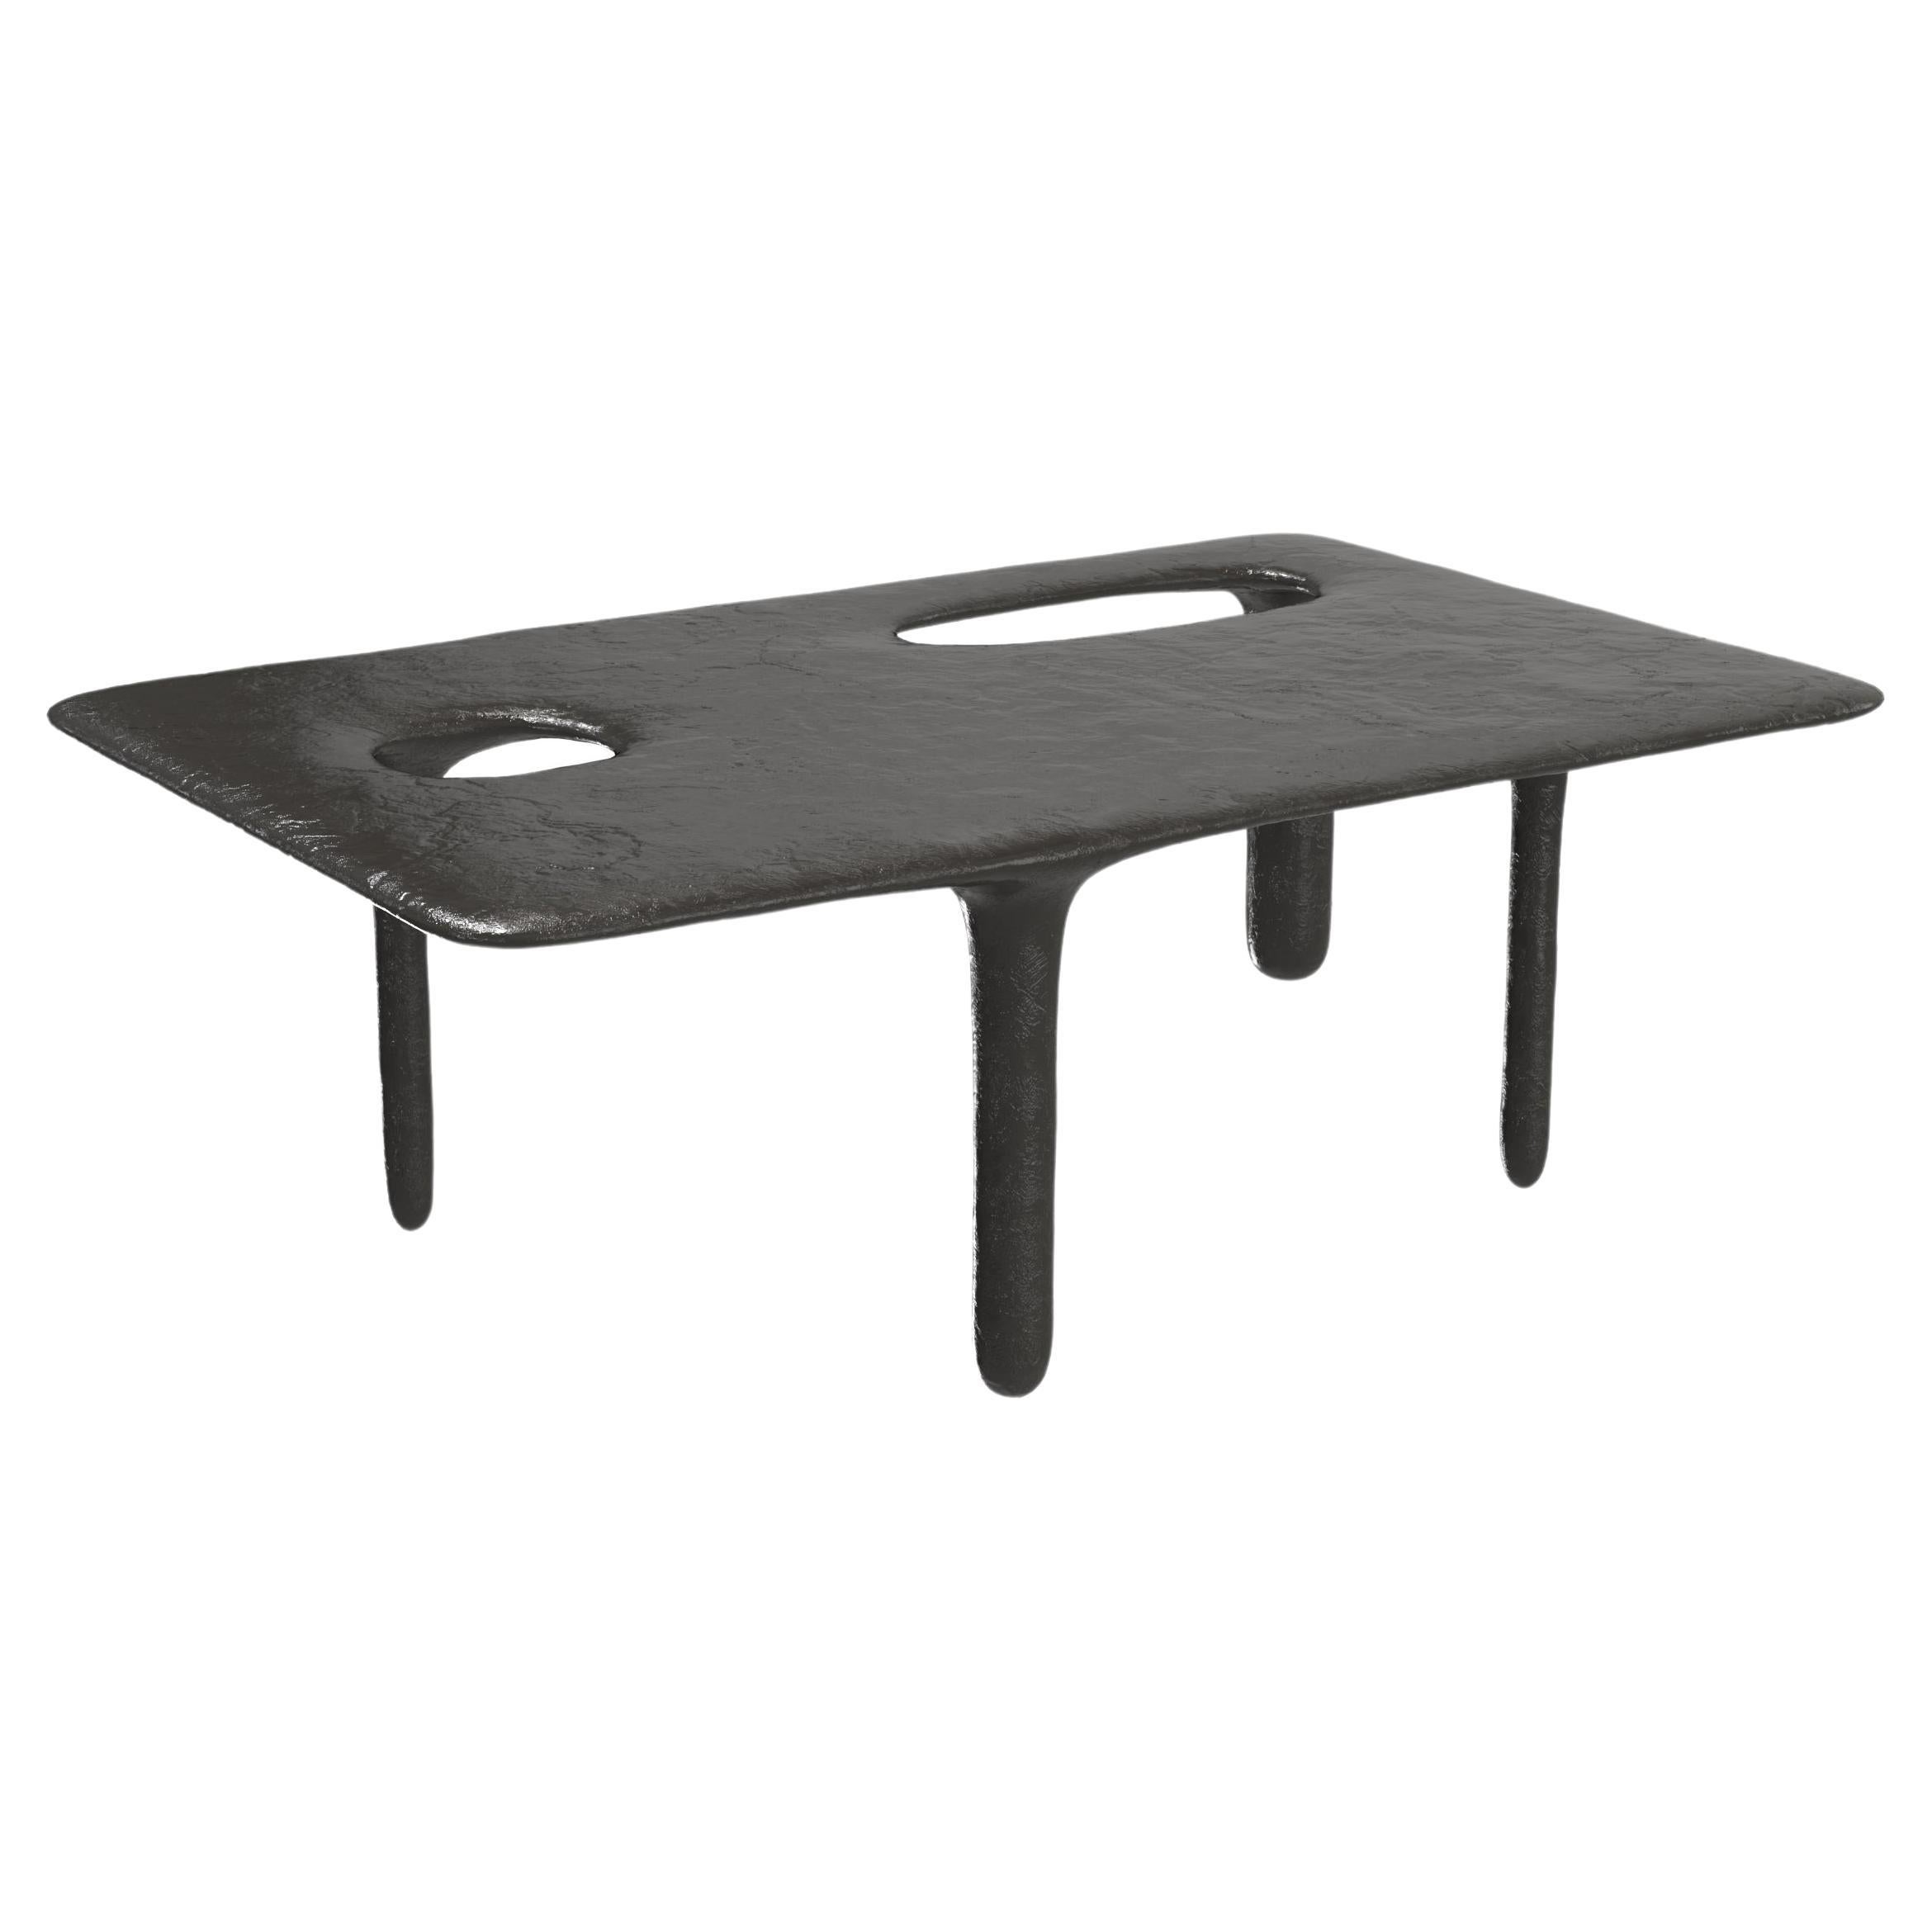 Limited Edition Bronze Table, Oasi V2 by Edizione Limitata For Sale